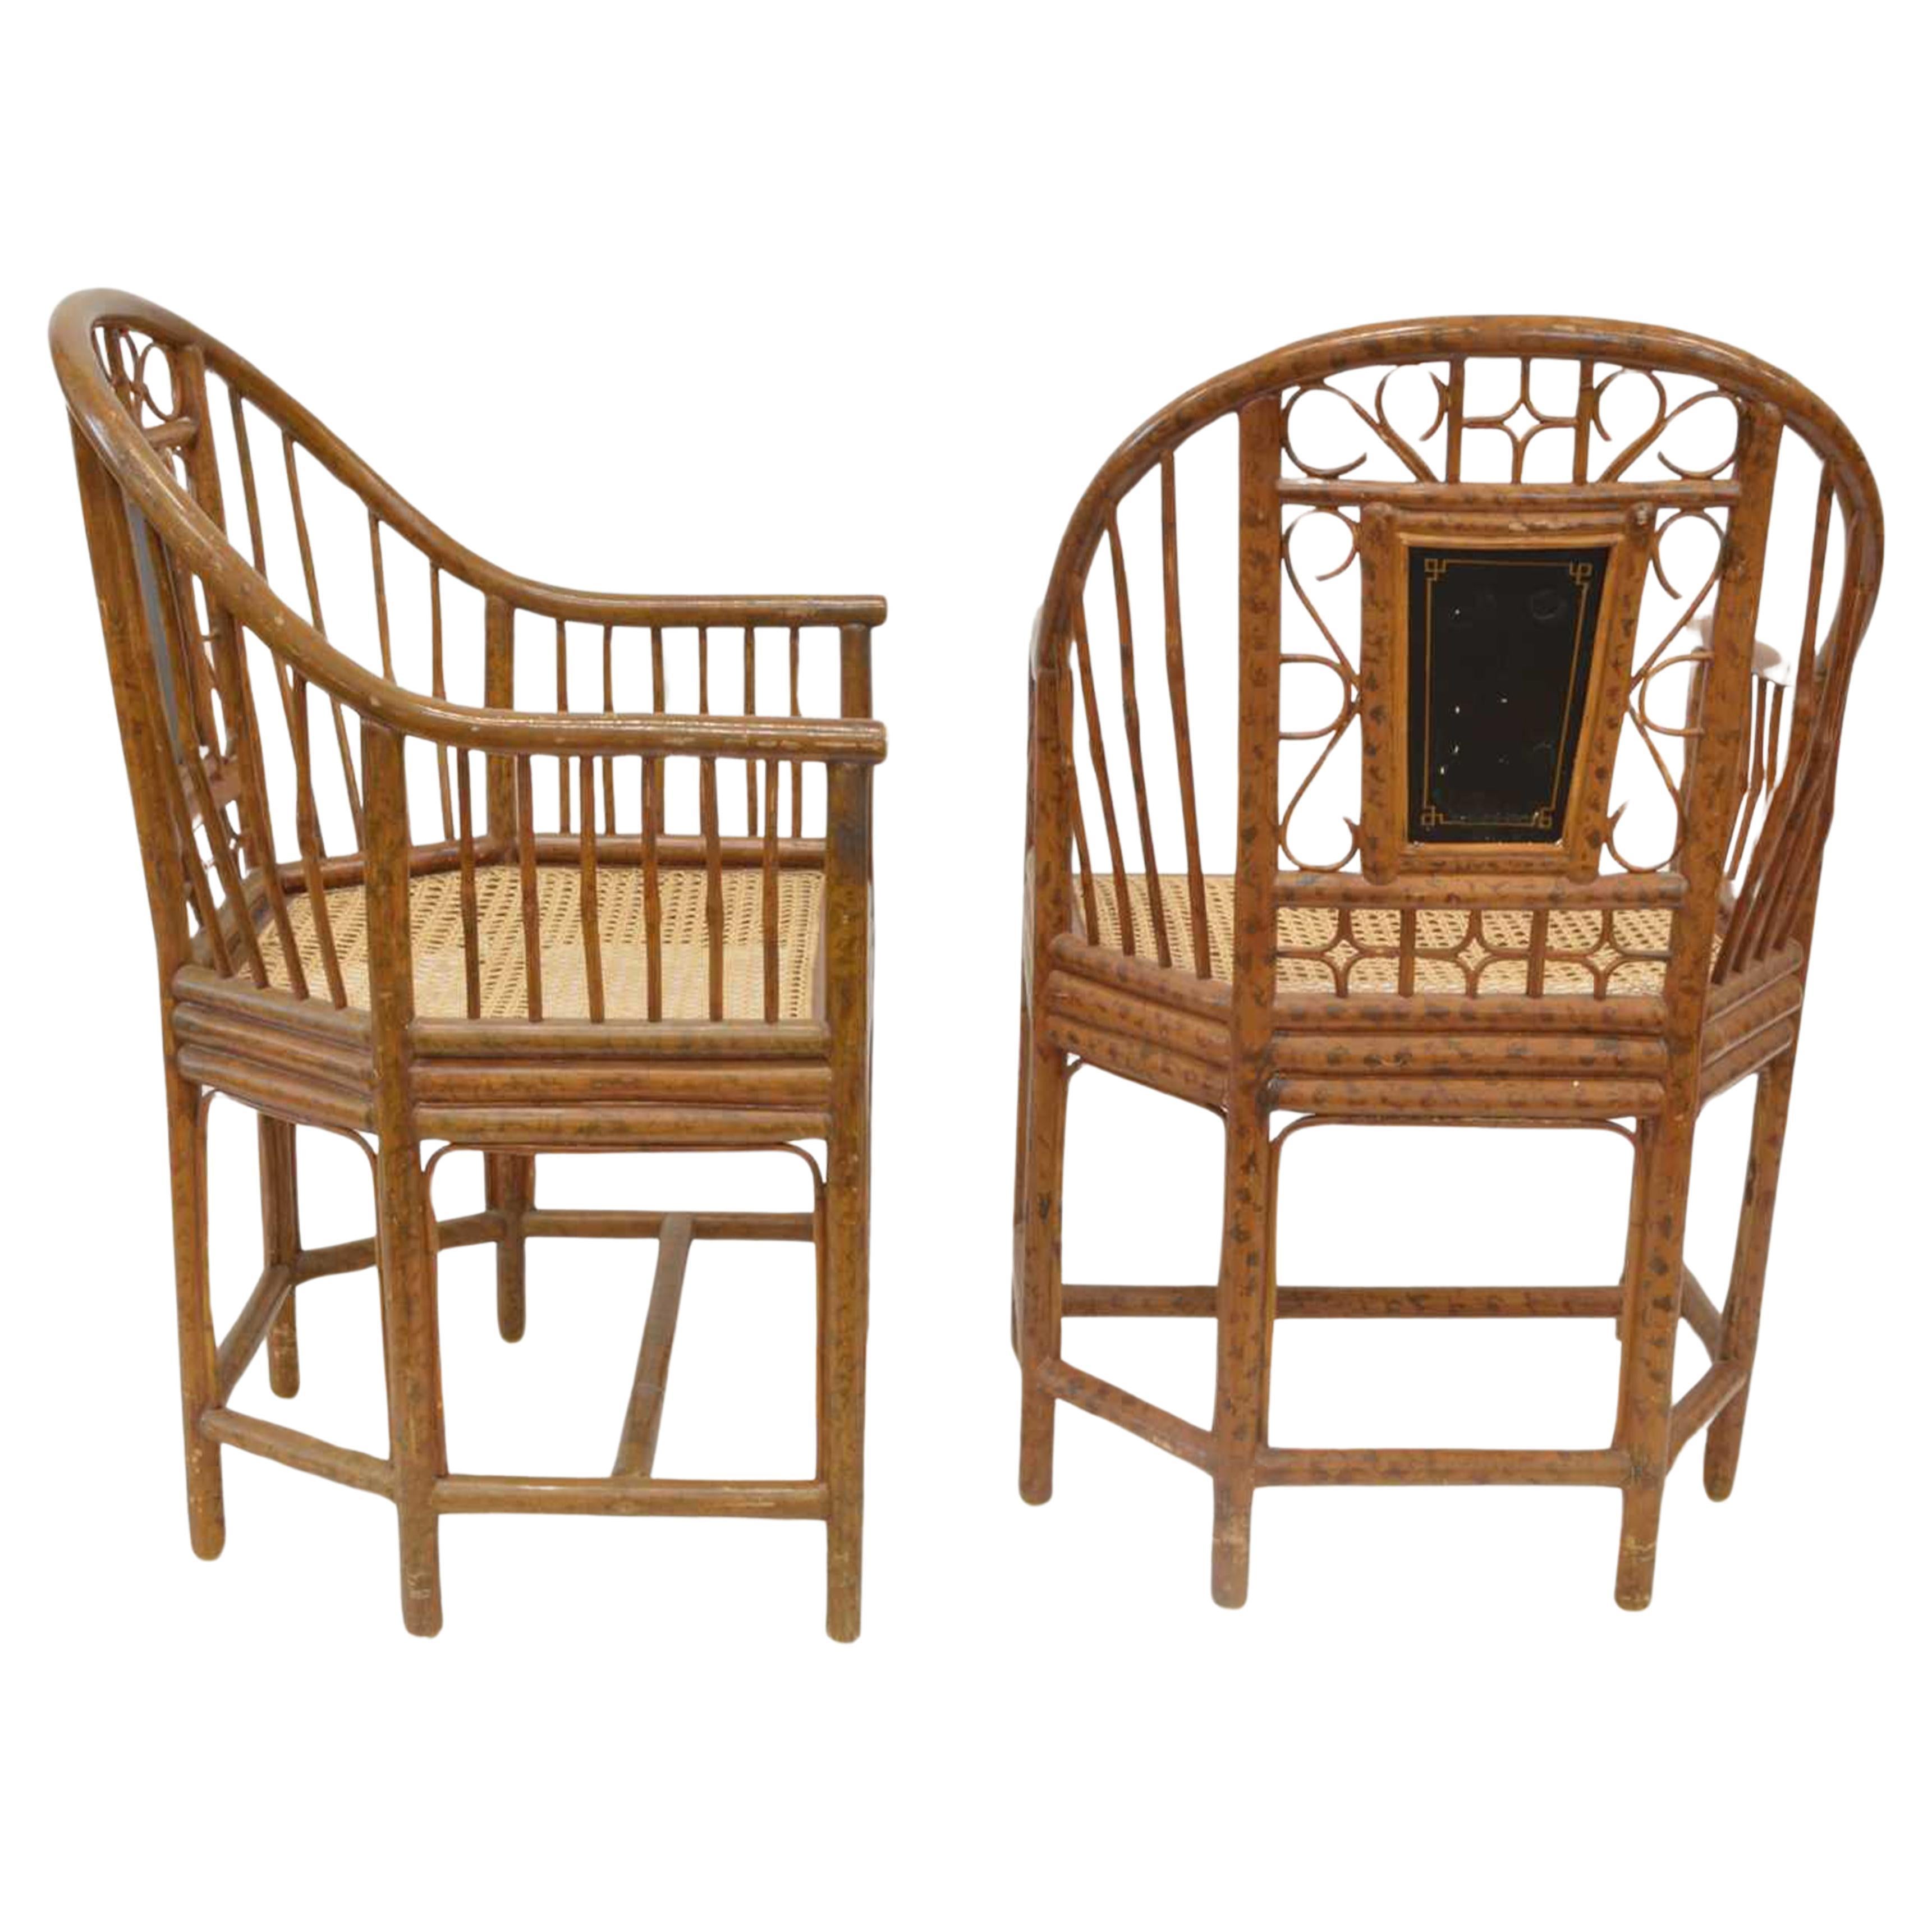 Ein handgefertigtes Paar Brighton Pavillon Stühle mit Caned Sitze & Painted Faux Burnt Bamboo beendet Frame.

Jede Sitzlehne ist mit vergoldeten Chinoiserie-Figuren bemalt.
Bemaltes Paneel über einem geformten Sitz, der auf sechs Beinen steht, die